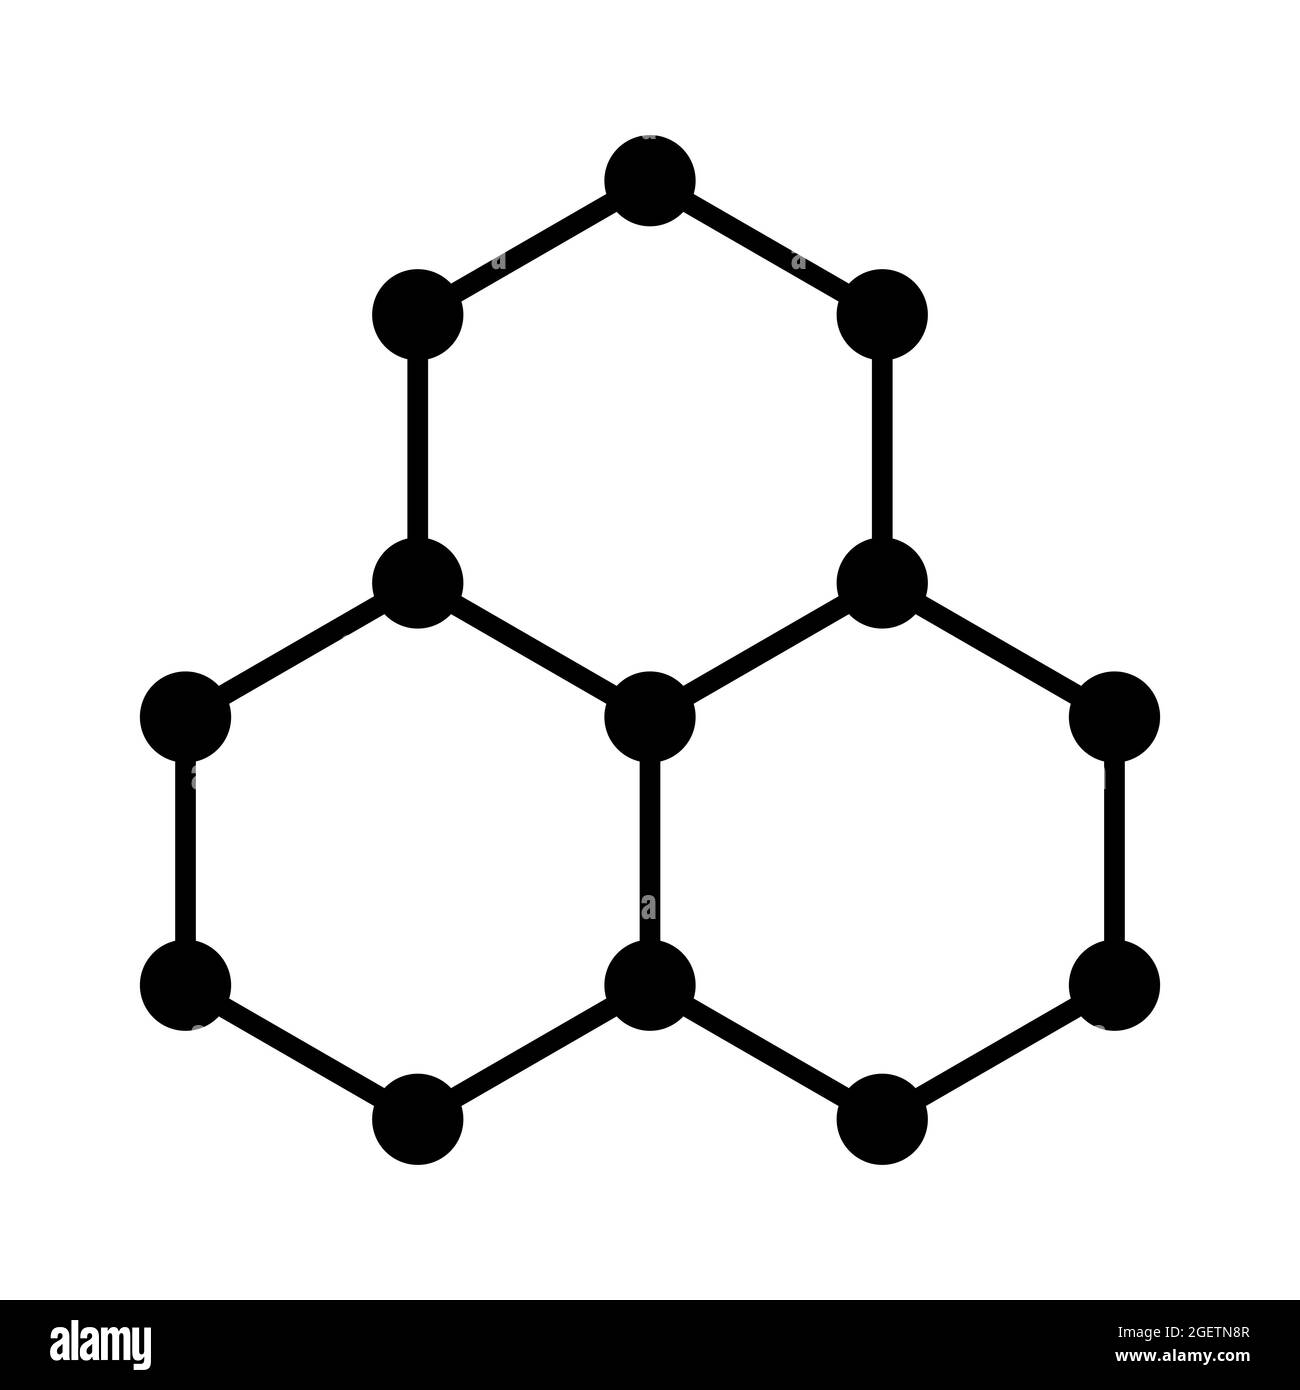 Symbole du graphène, structure moléculaire schématique du graphène, allotrope de carbone, composé d'une seule couche d'atomes de carbone dans une grille hexagonale. Banque D'Images